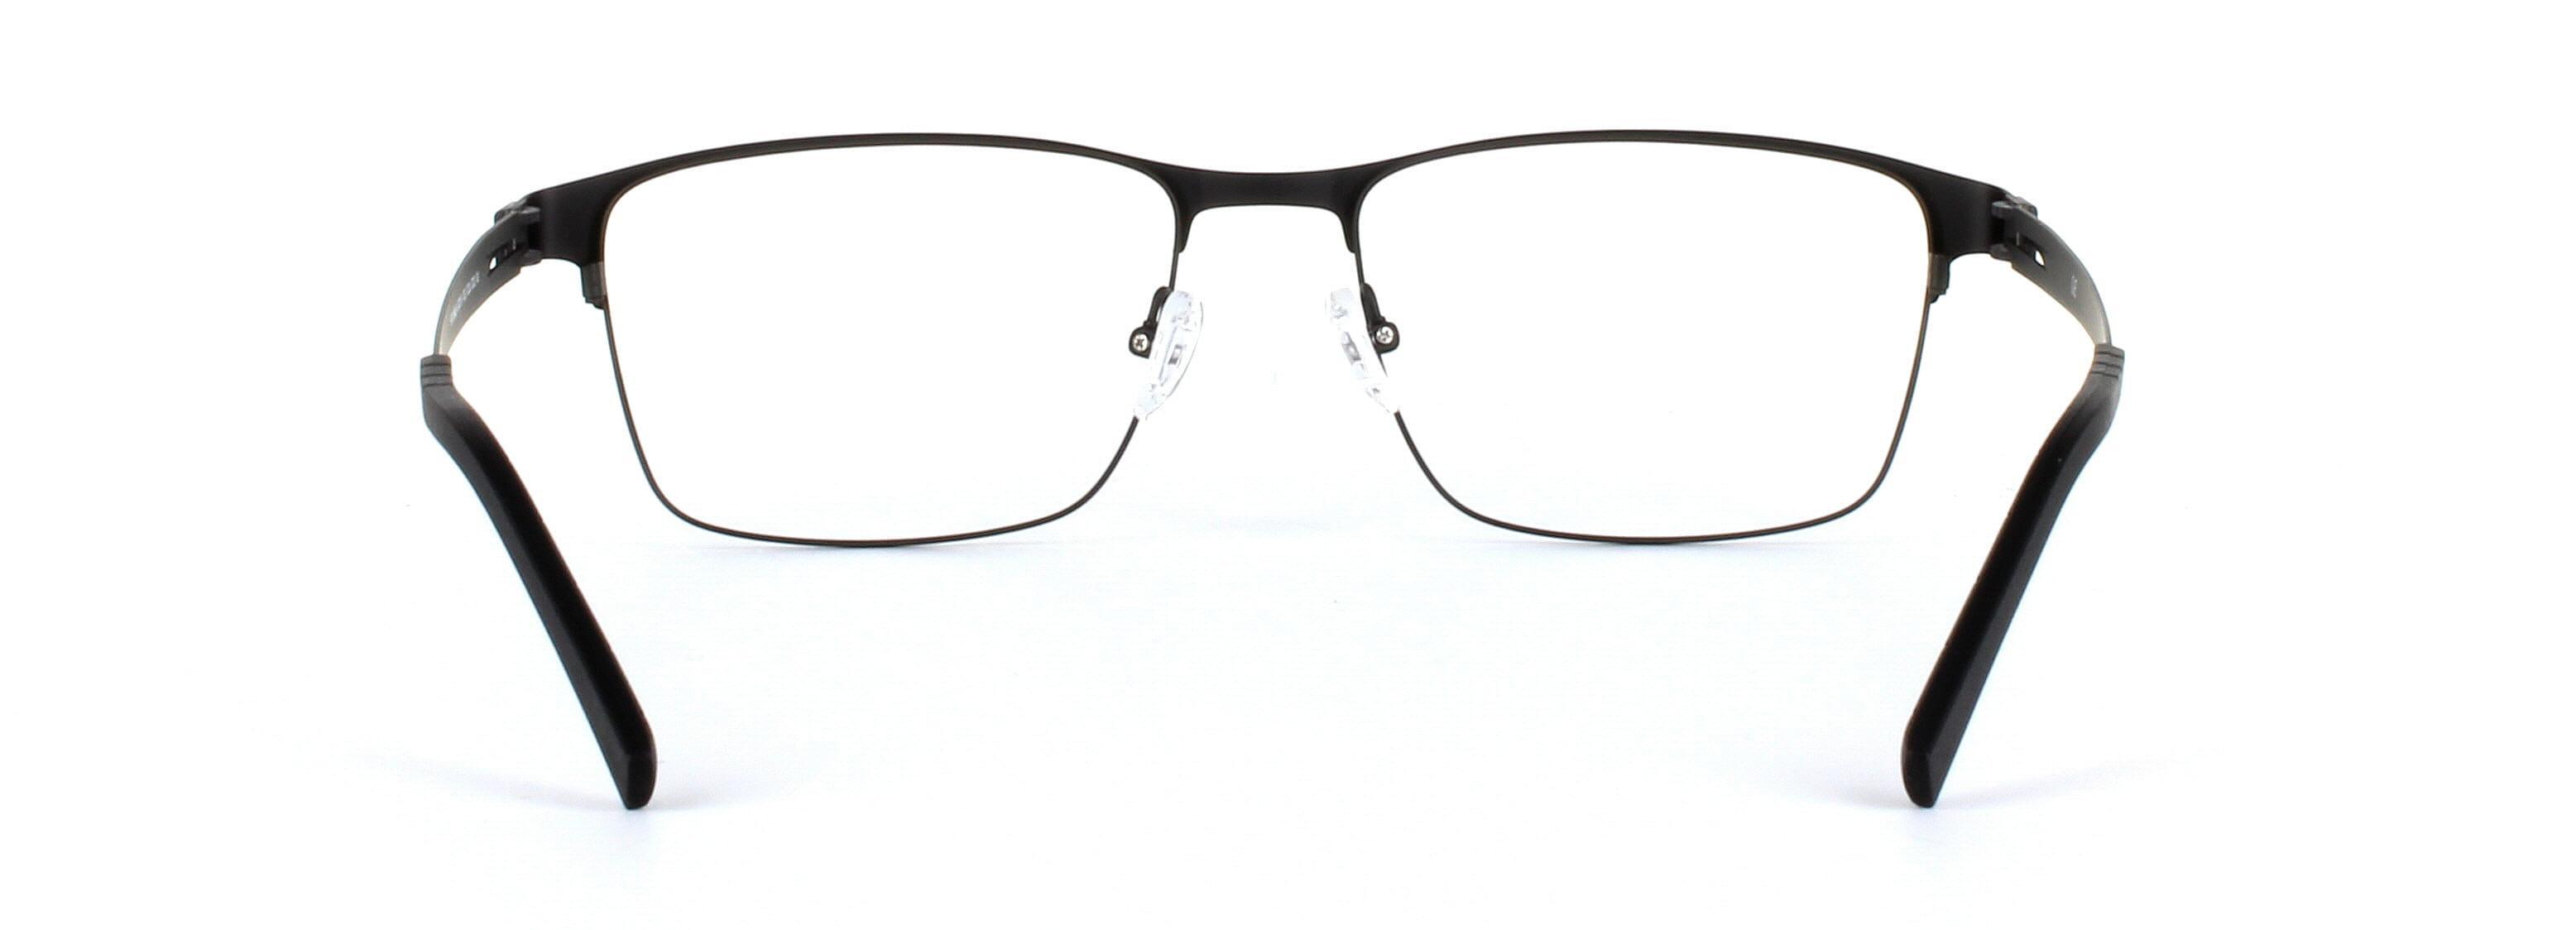 Divo Matt Black Full Rim Square Titanium Glasses - Image View 3